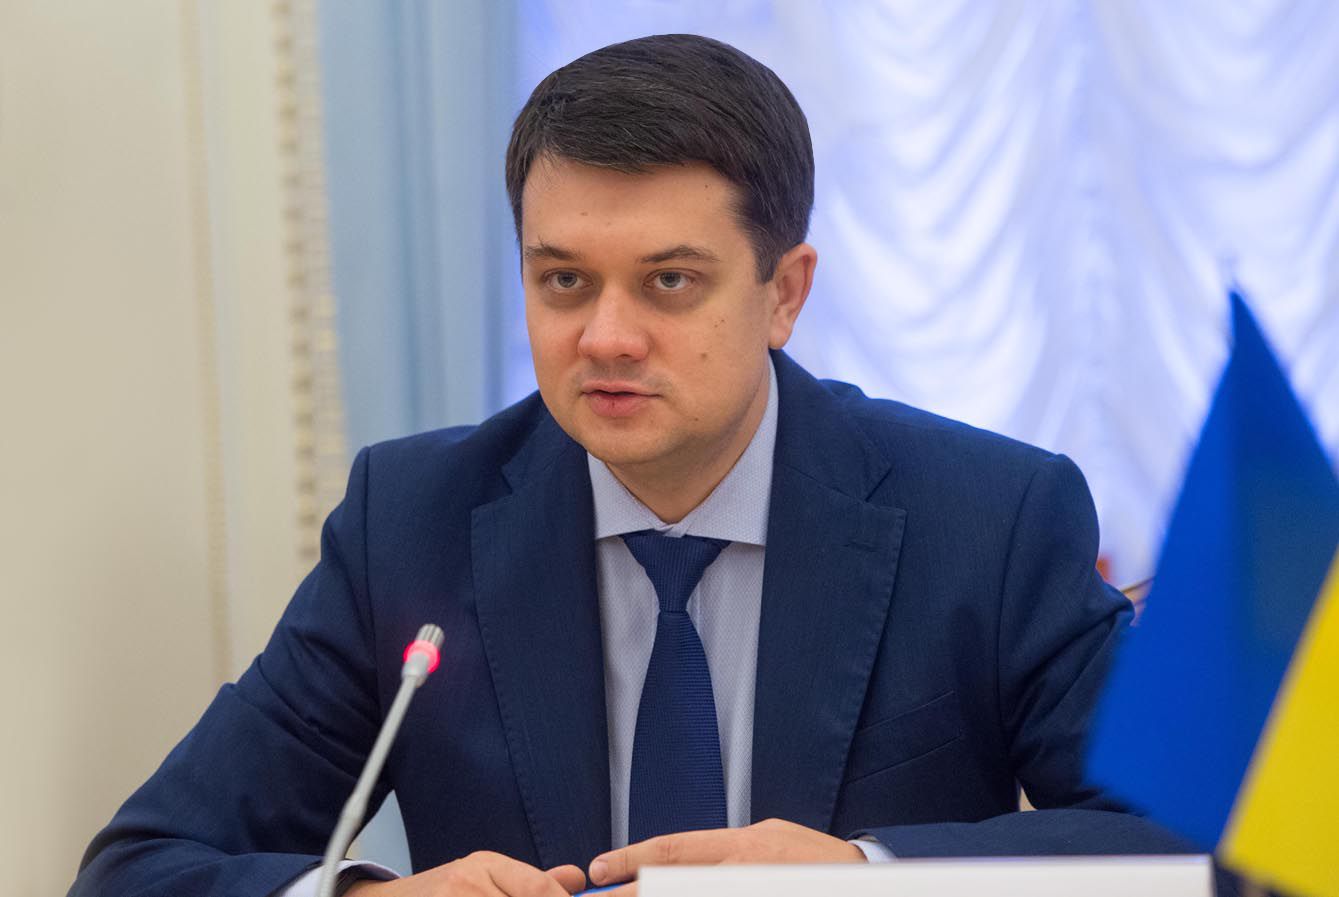 Дмитро Разумков: «Україна та Грузія мають активізувати міжнародні інструменти співпраці»